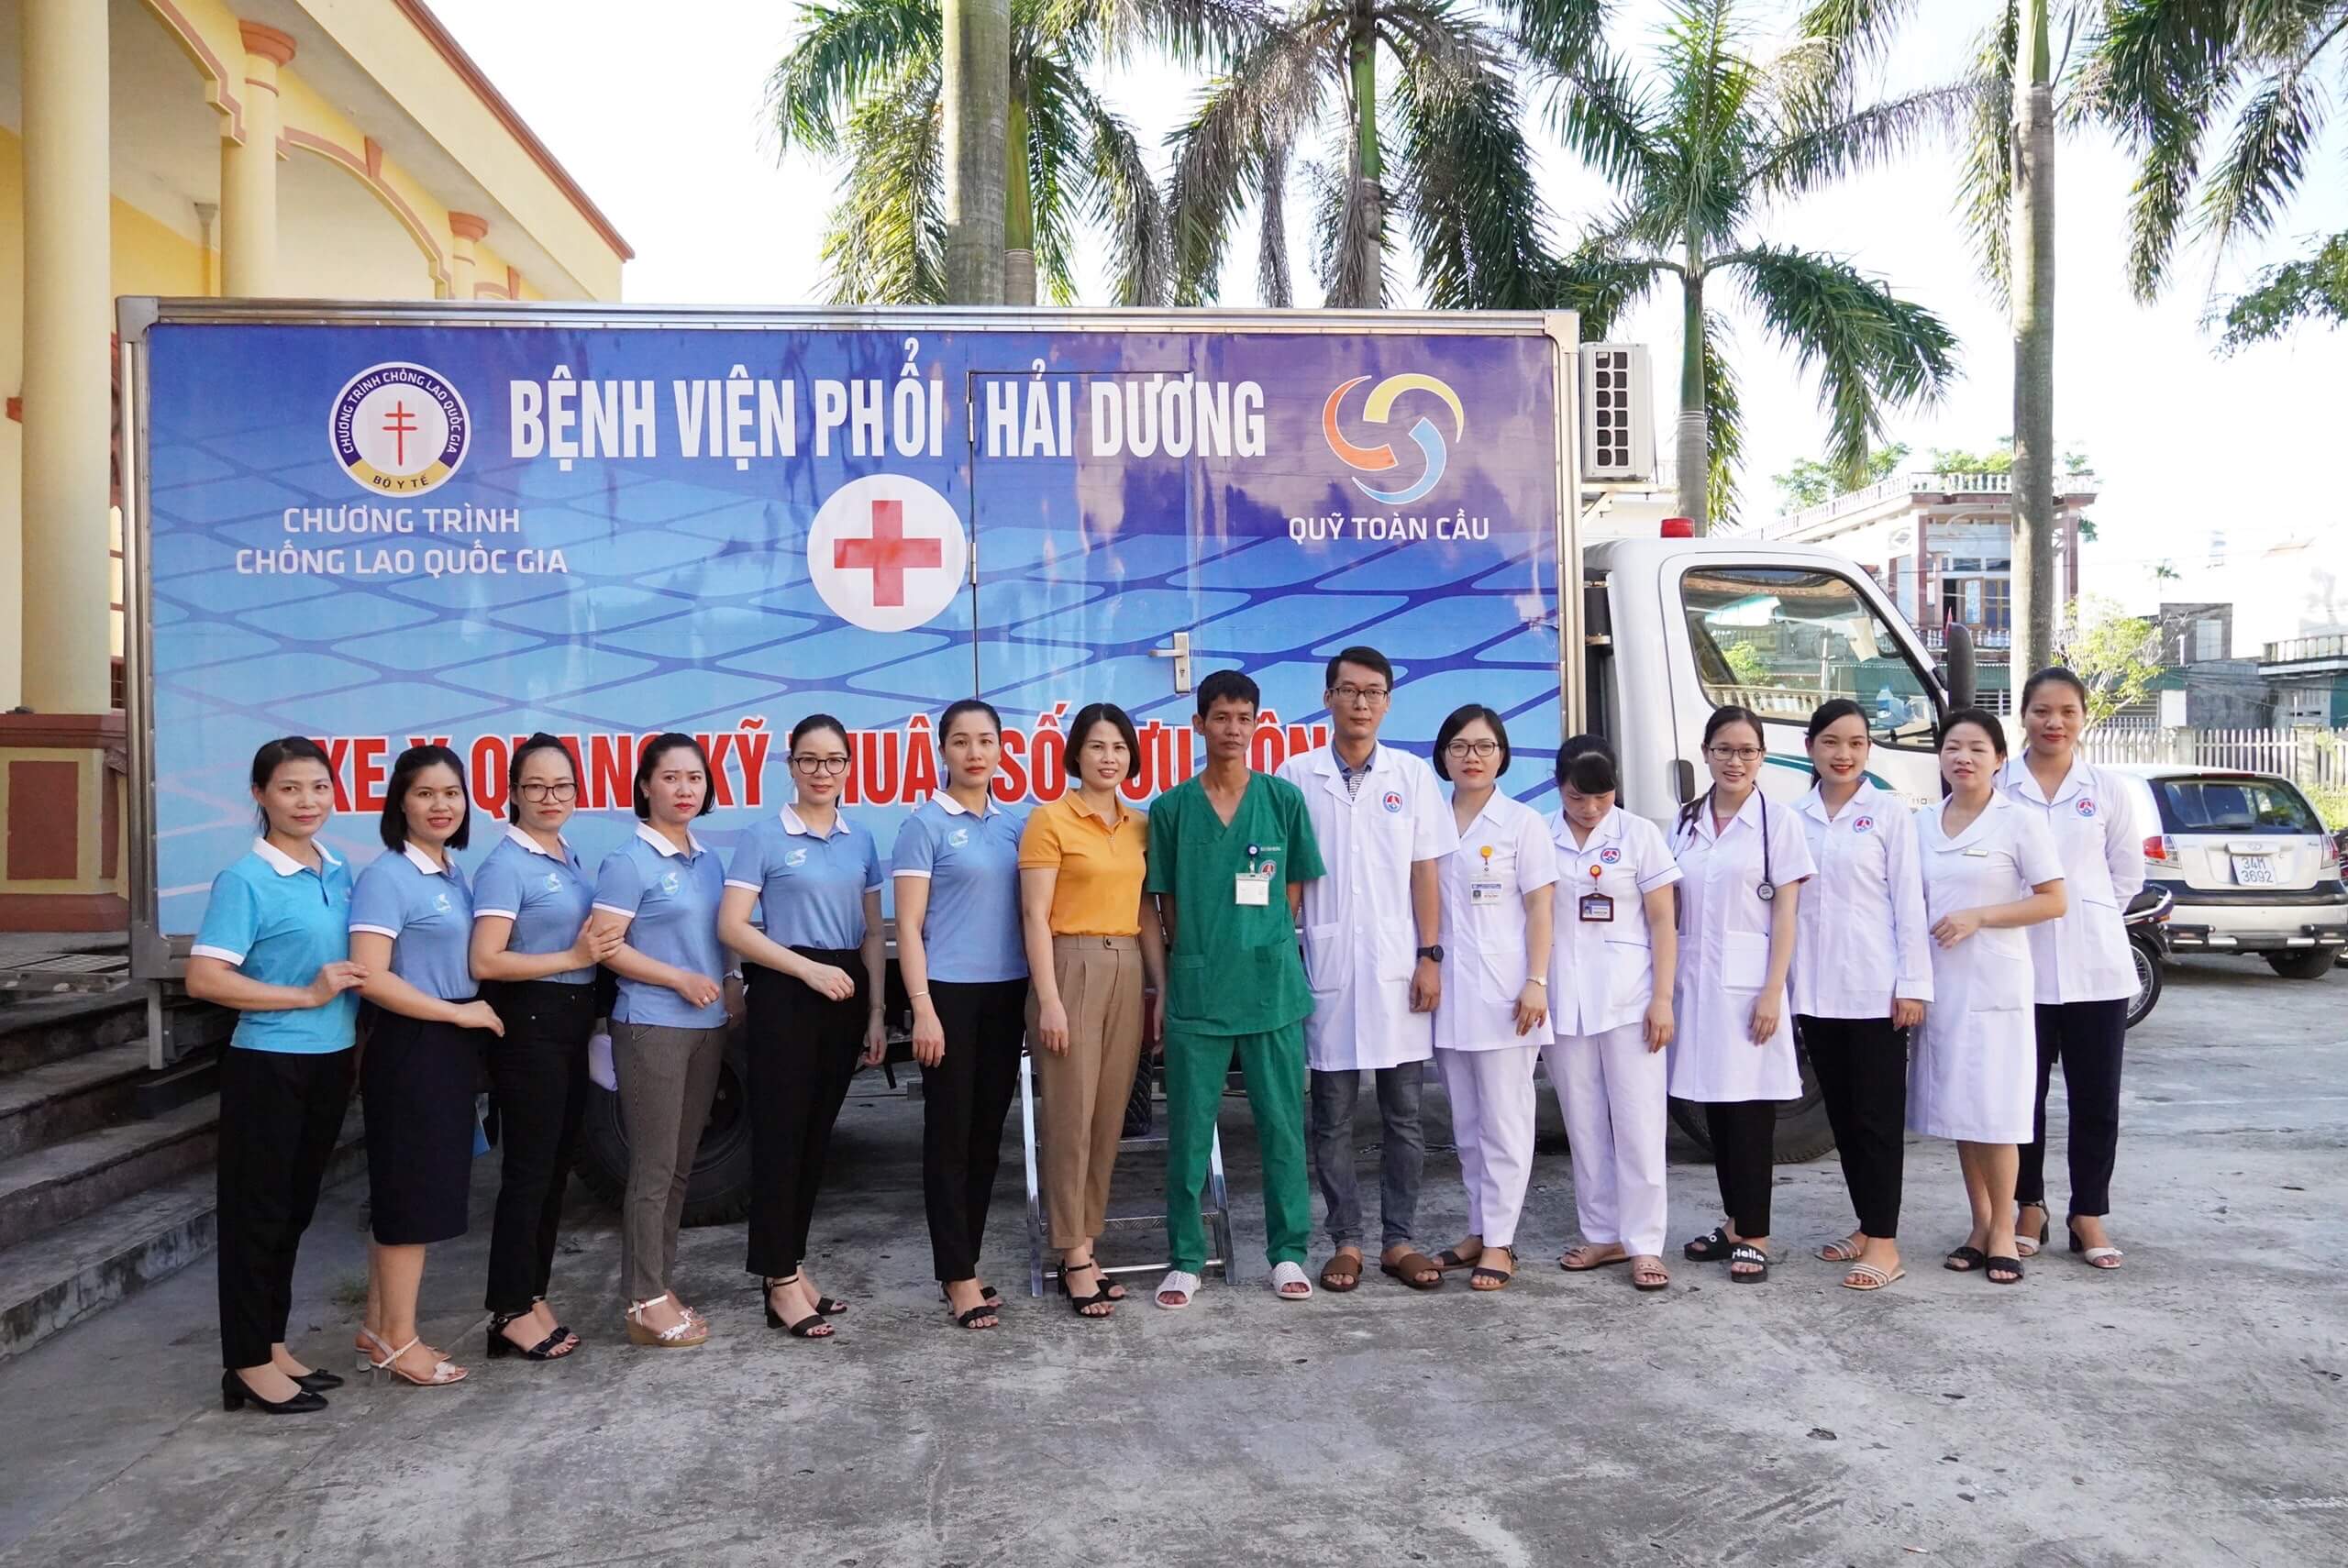 Bệnh viện Phổi Hải Dương tổ chức khám chữa bệnh cho các đối tượng chính sách tại xã Gia Xuyên.